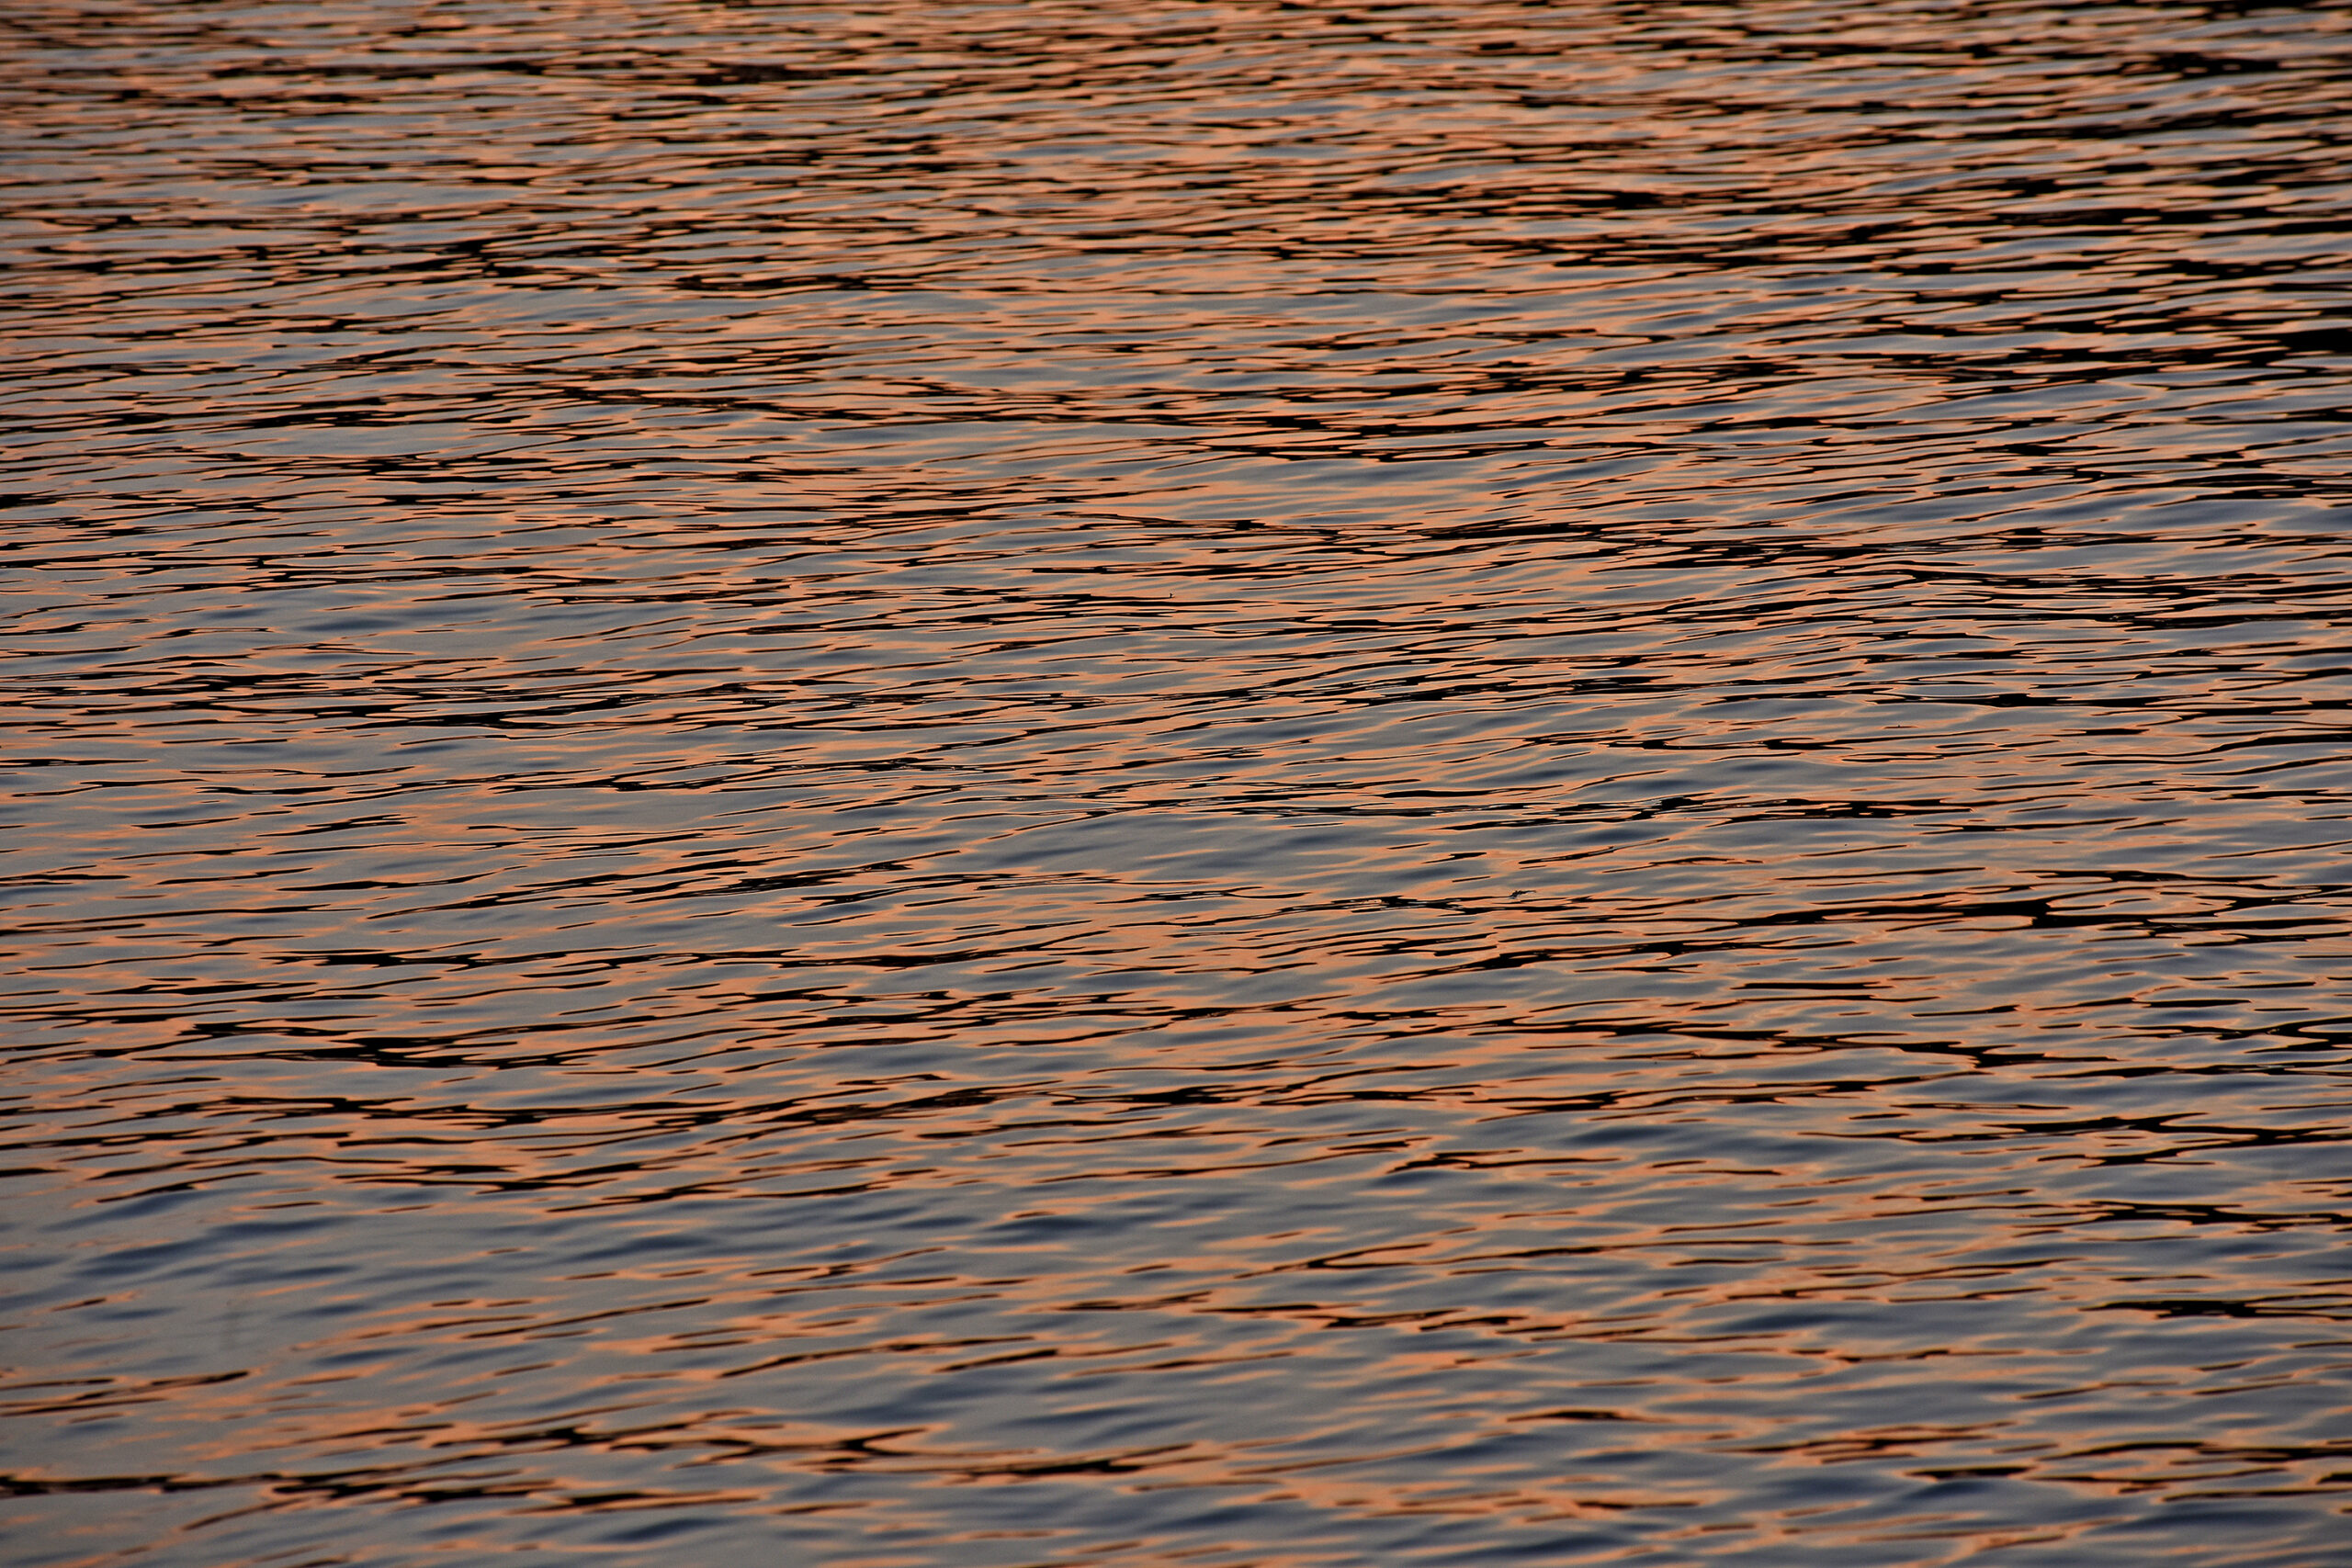 Jordan Lake at sunset